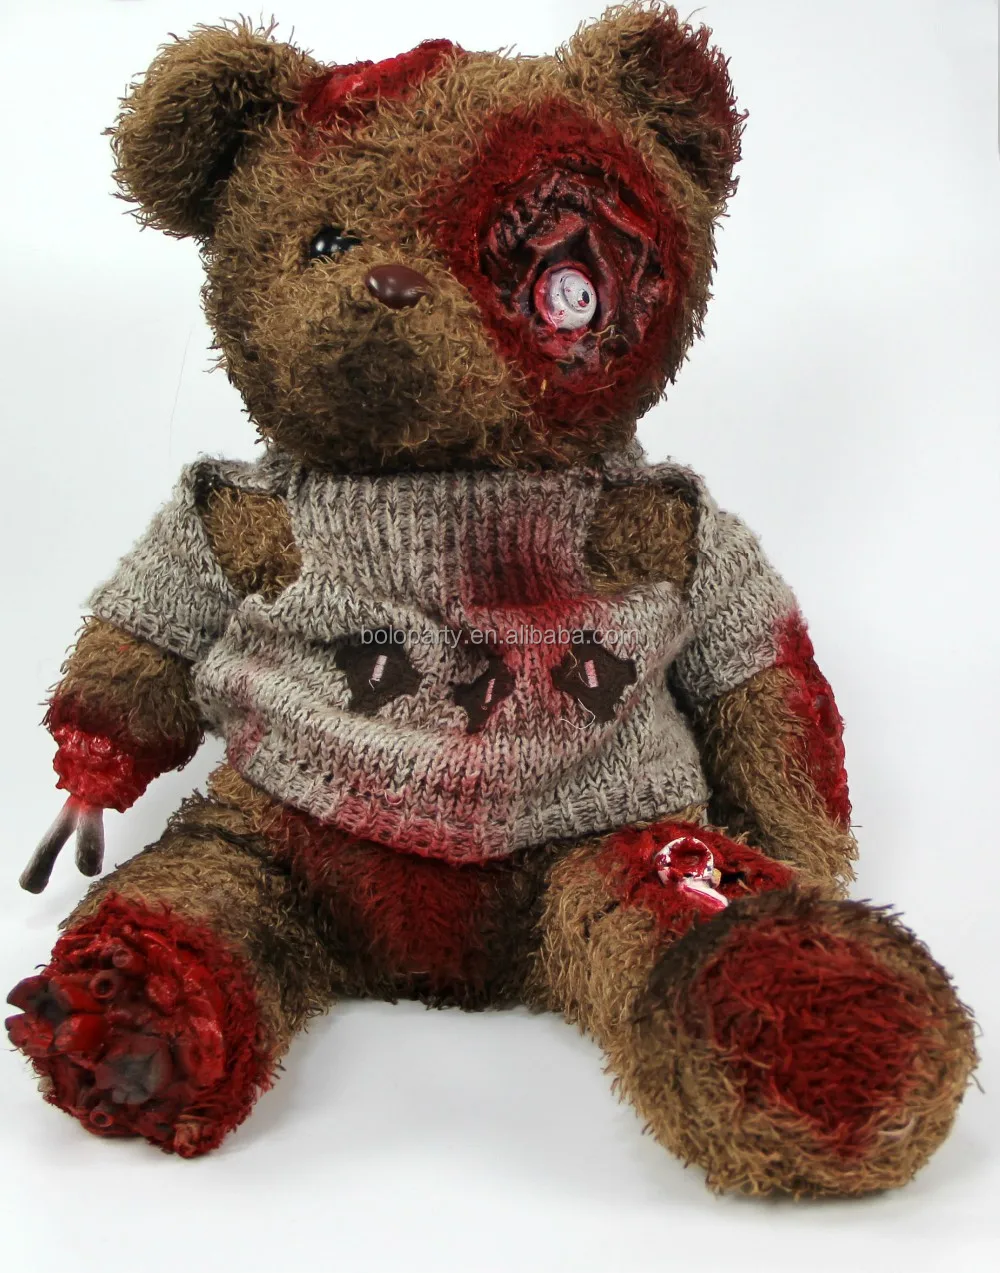 creepy stuffed bear